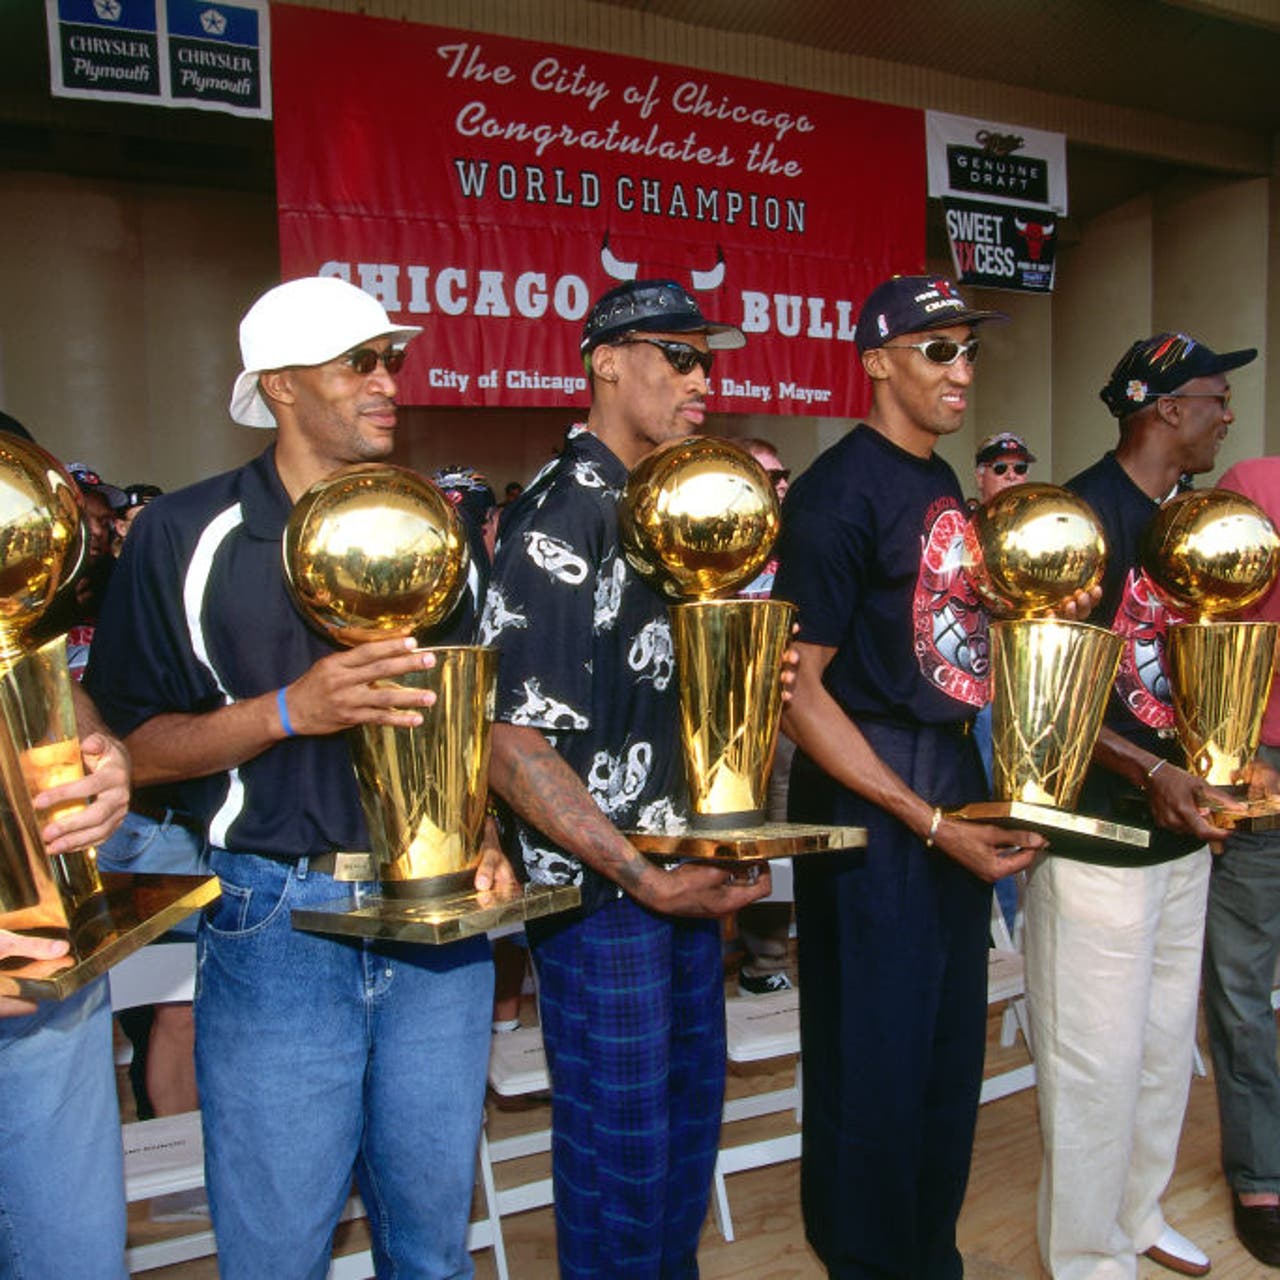 Where Michael Jordan-led Bulls 1997-98 title roster went post-breakup